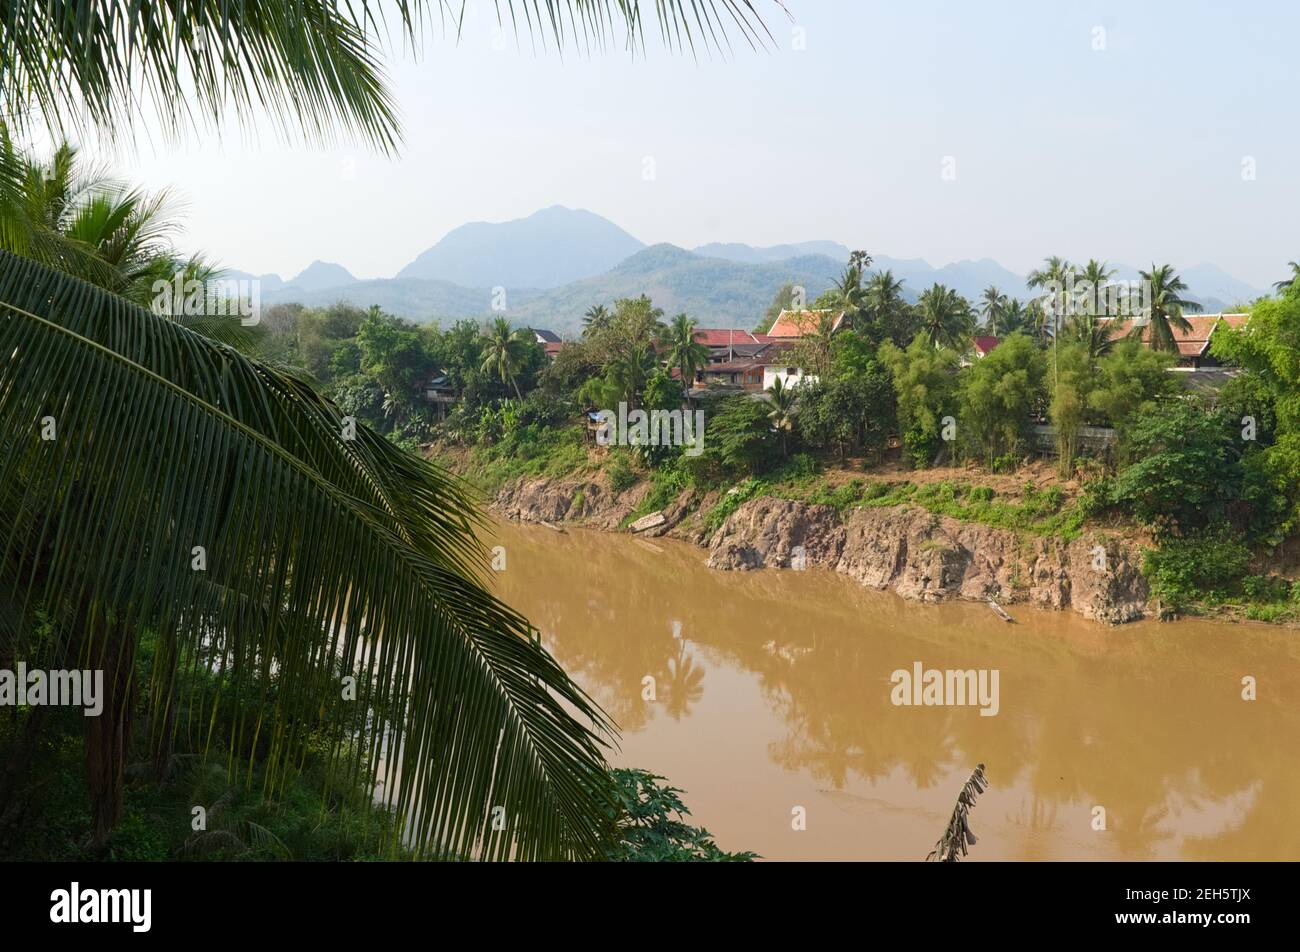 Blick auf den Mekong durch Palmenblätter. Orangefarbenes Dach des buddhistischen Tempels und Berge im Hintergrund. Traditionelle Landschaft in Laos. Stockfoto